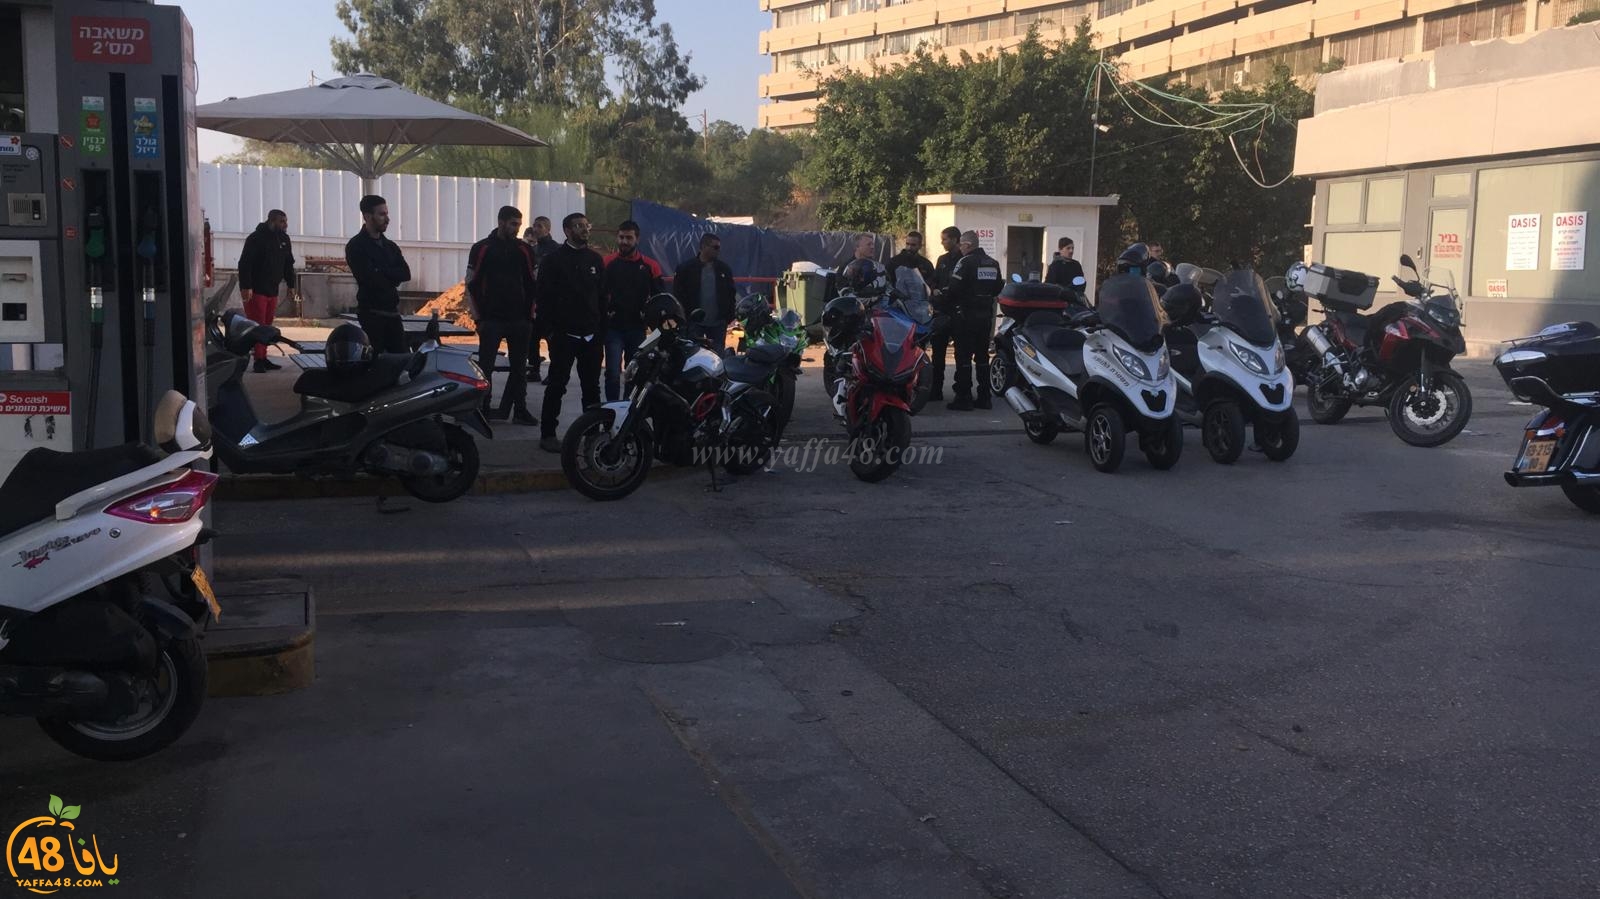  فيديو: تظاهرة لراكبي الدراجات النارية بيافا احتجاجاً على قانون المخالفات الجديد 